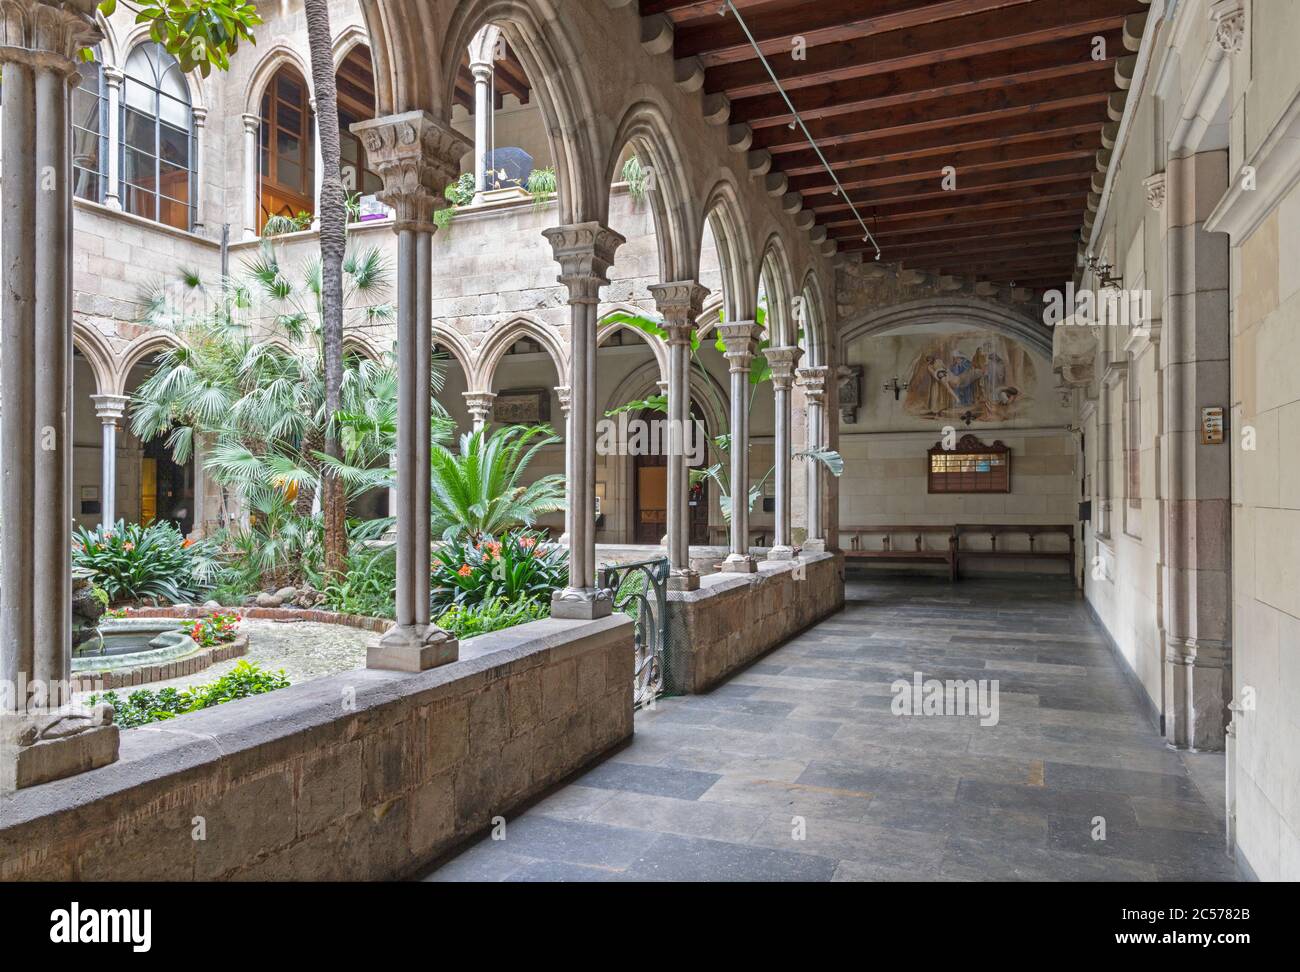 BARCELONA, SPAIN - MARCH 5, 2020: The atrium of church Església de la Concepció. Stock Photo